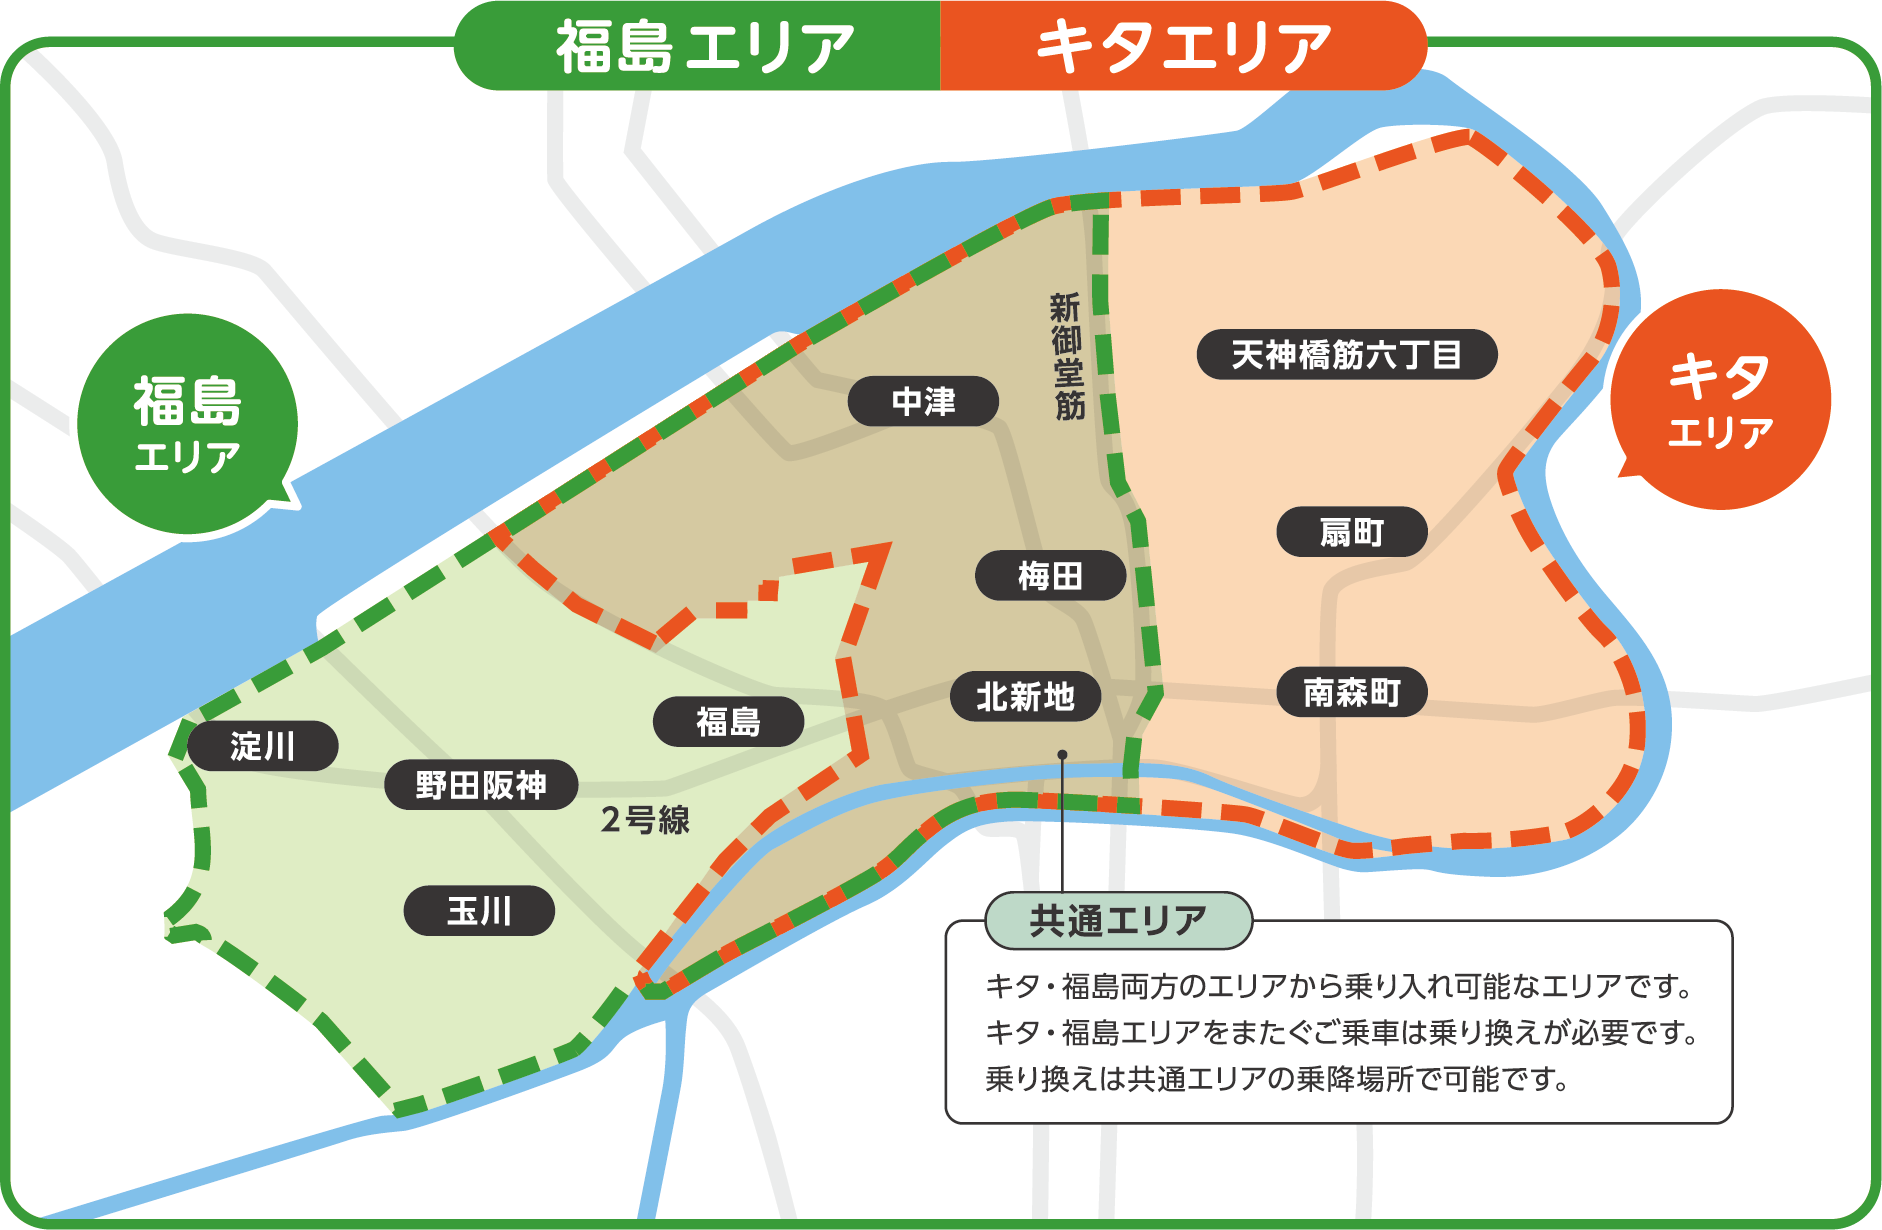 福島エリア・キタエリア・共通エリアの地図